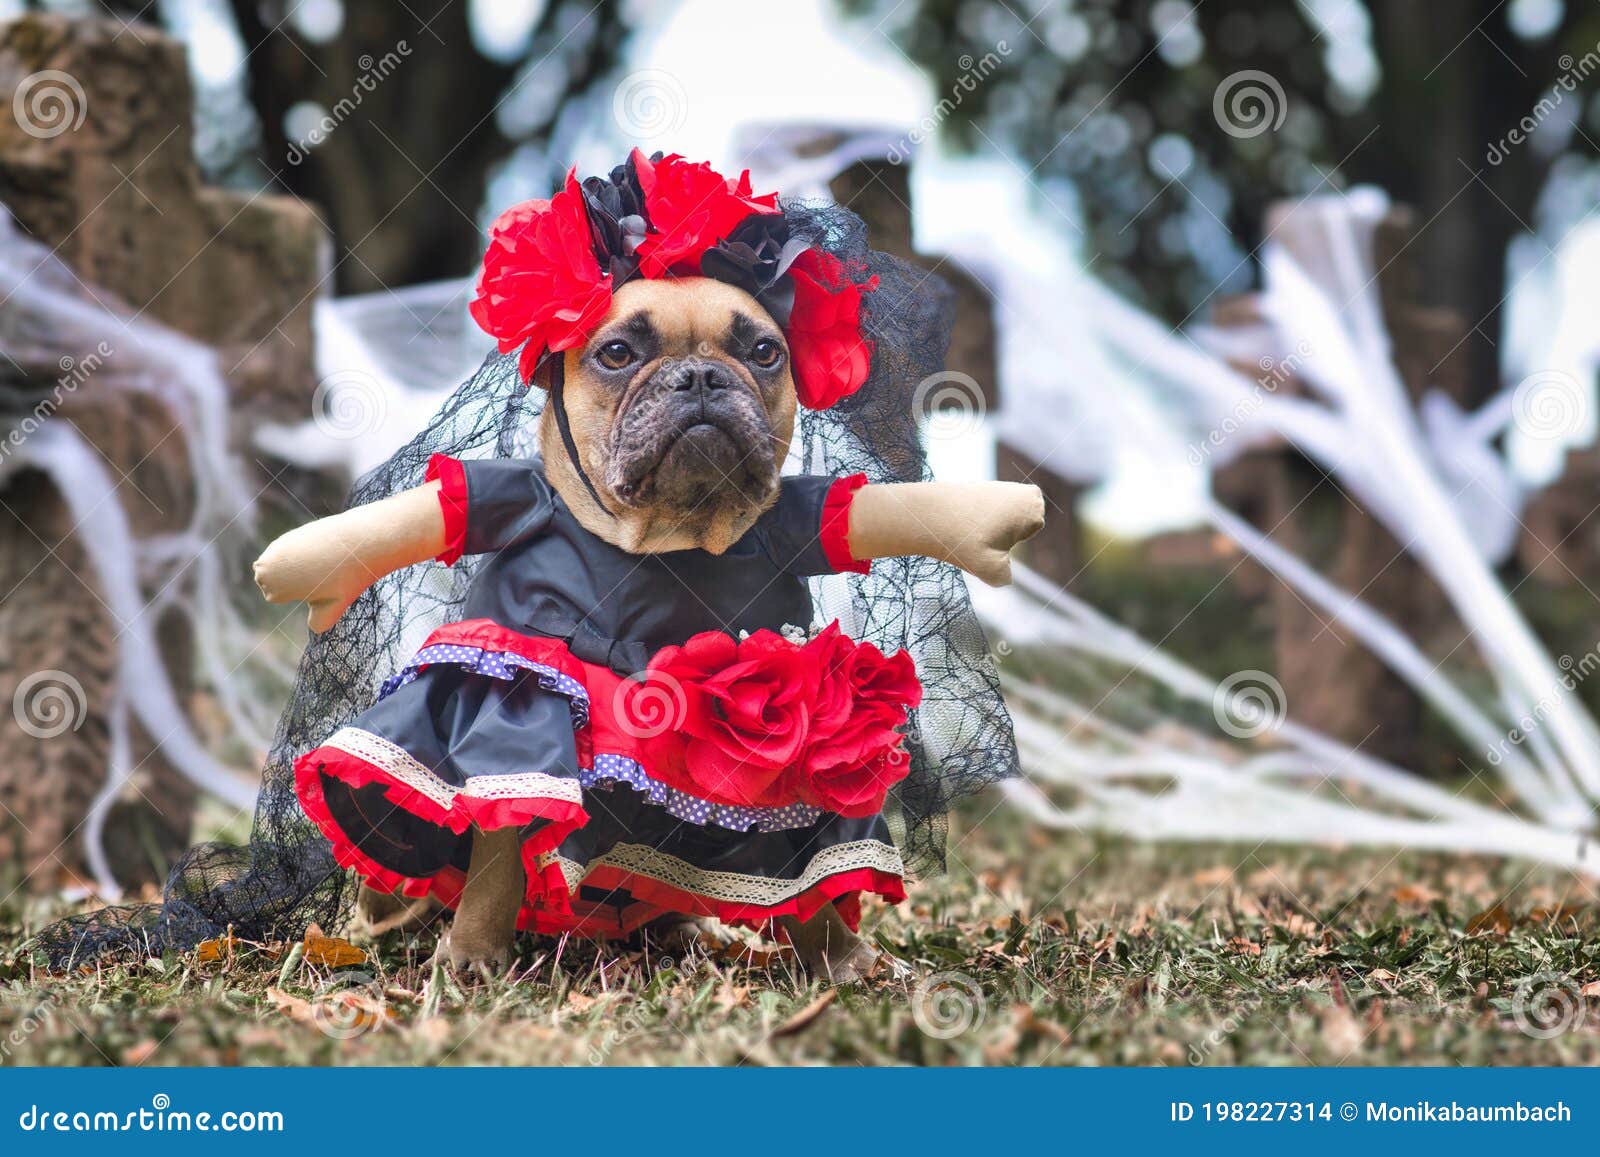 Perro Bulldog Francés Vestido Con El Disfraz De Halloween De La Catrina Con Vestido  Rojo Y Negro Con Flores De Rosa Y Velo De Enca Foto de archivo - Imagen de  vestido,